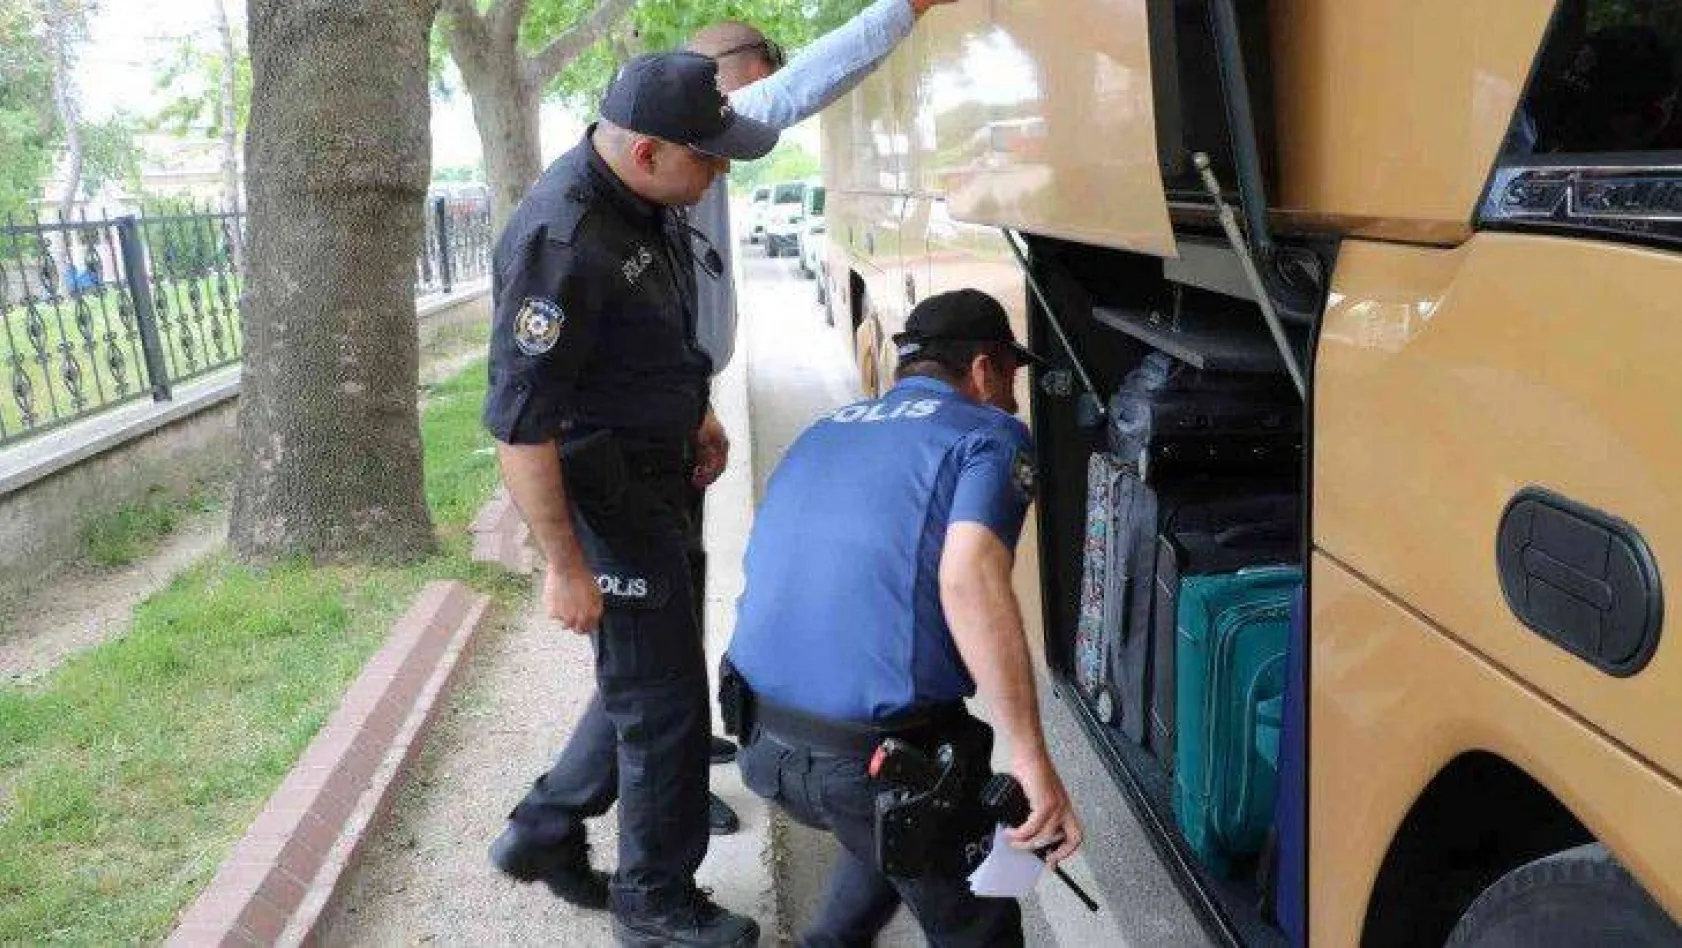 Göçmenler otobüsün deposunda sıkışmış halde yakalandı